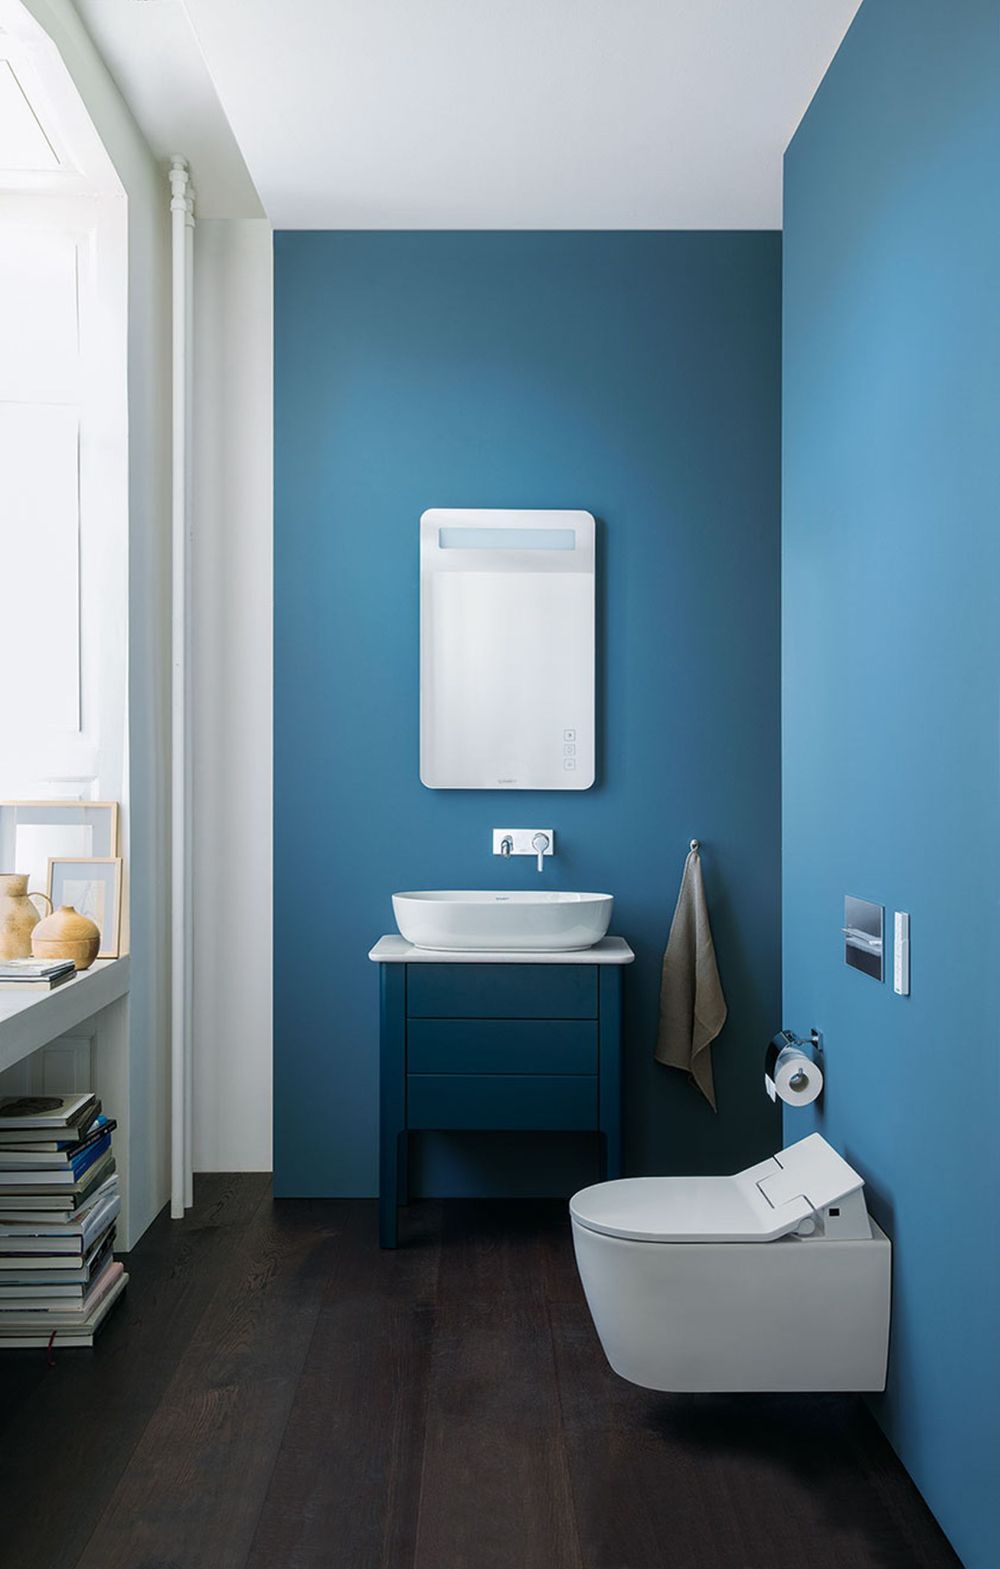 niebieska łazienka, kolor niebieski w łazience, niebieskie ściany w łazience